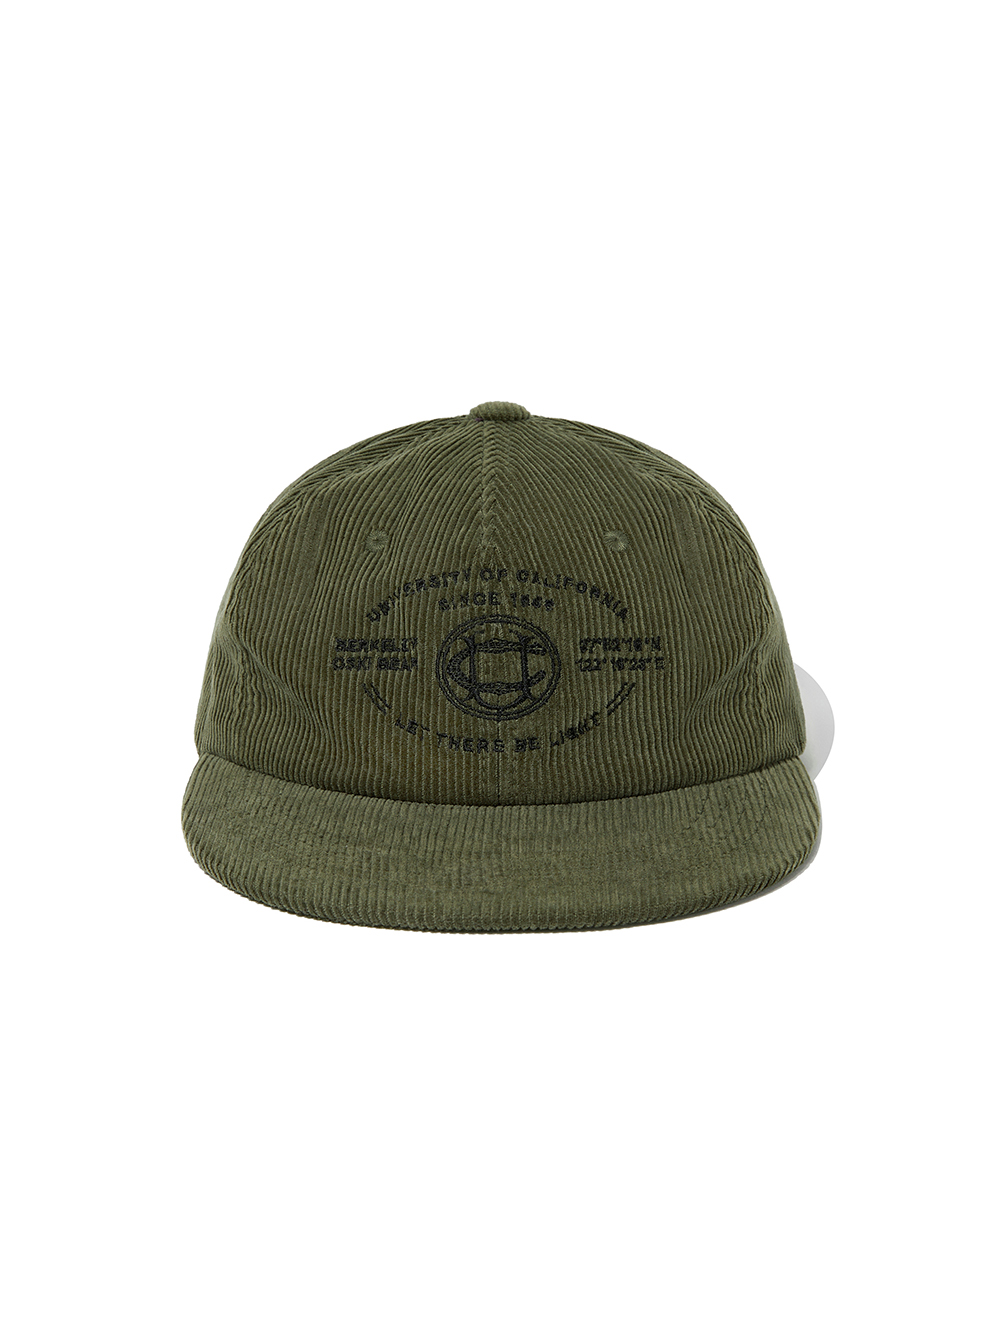 CORDUROY CAMP CAP [KHAKI]